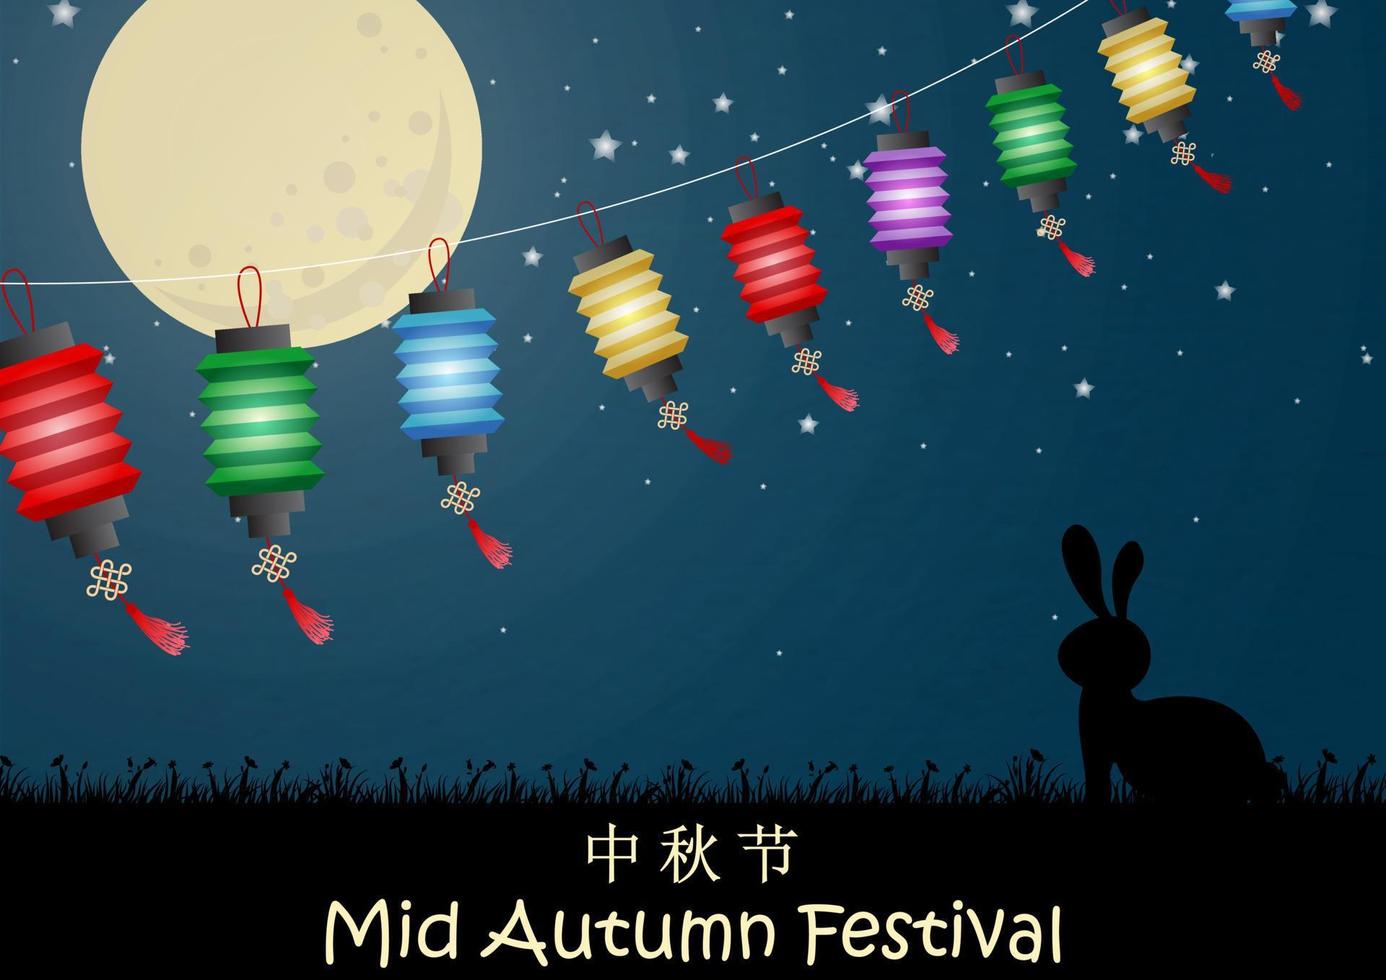 lanternas chinesas coloridas com silhueta de coelho em pé fazem um desejo com lua cheia no fundo da noite. textos chineses significa festival do meio do outono em inglês vetor